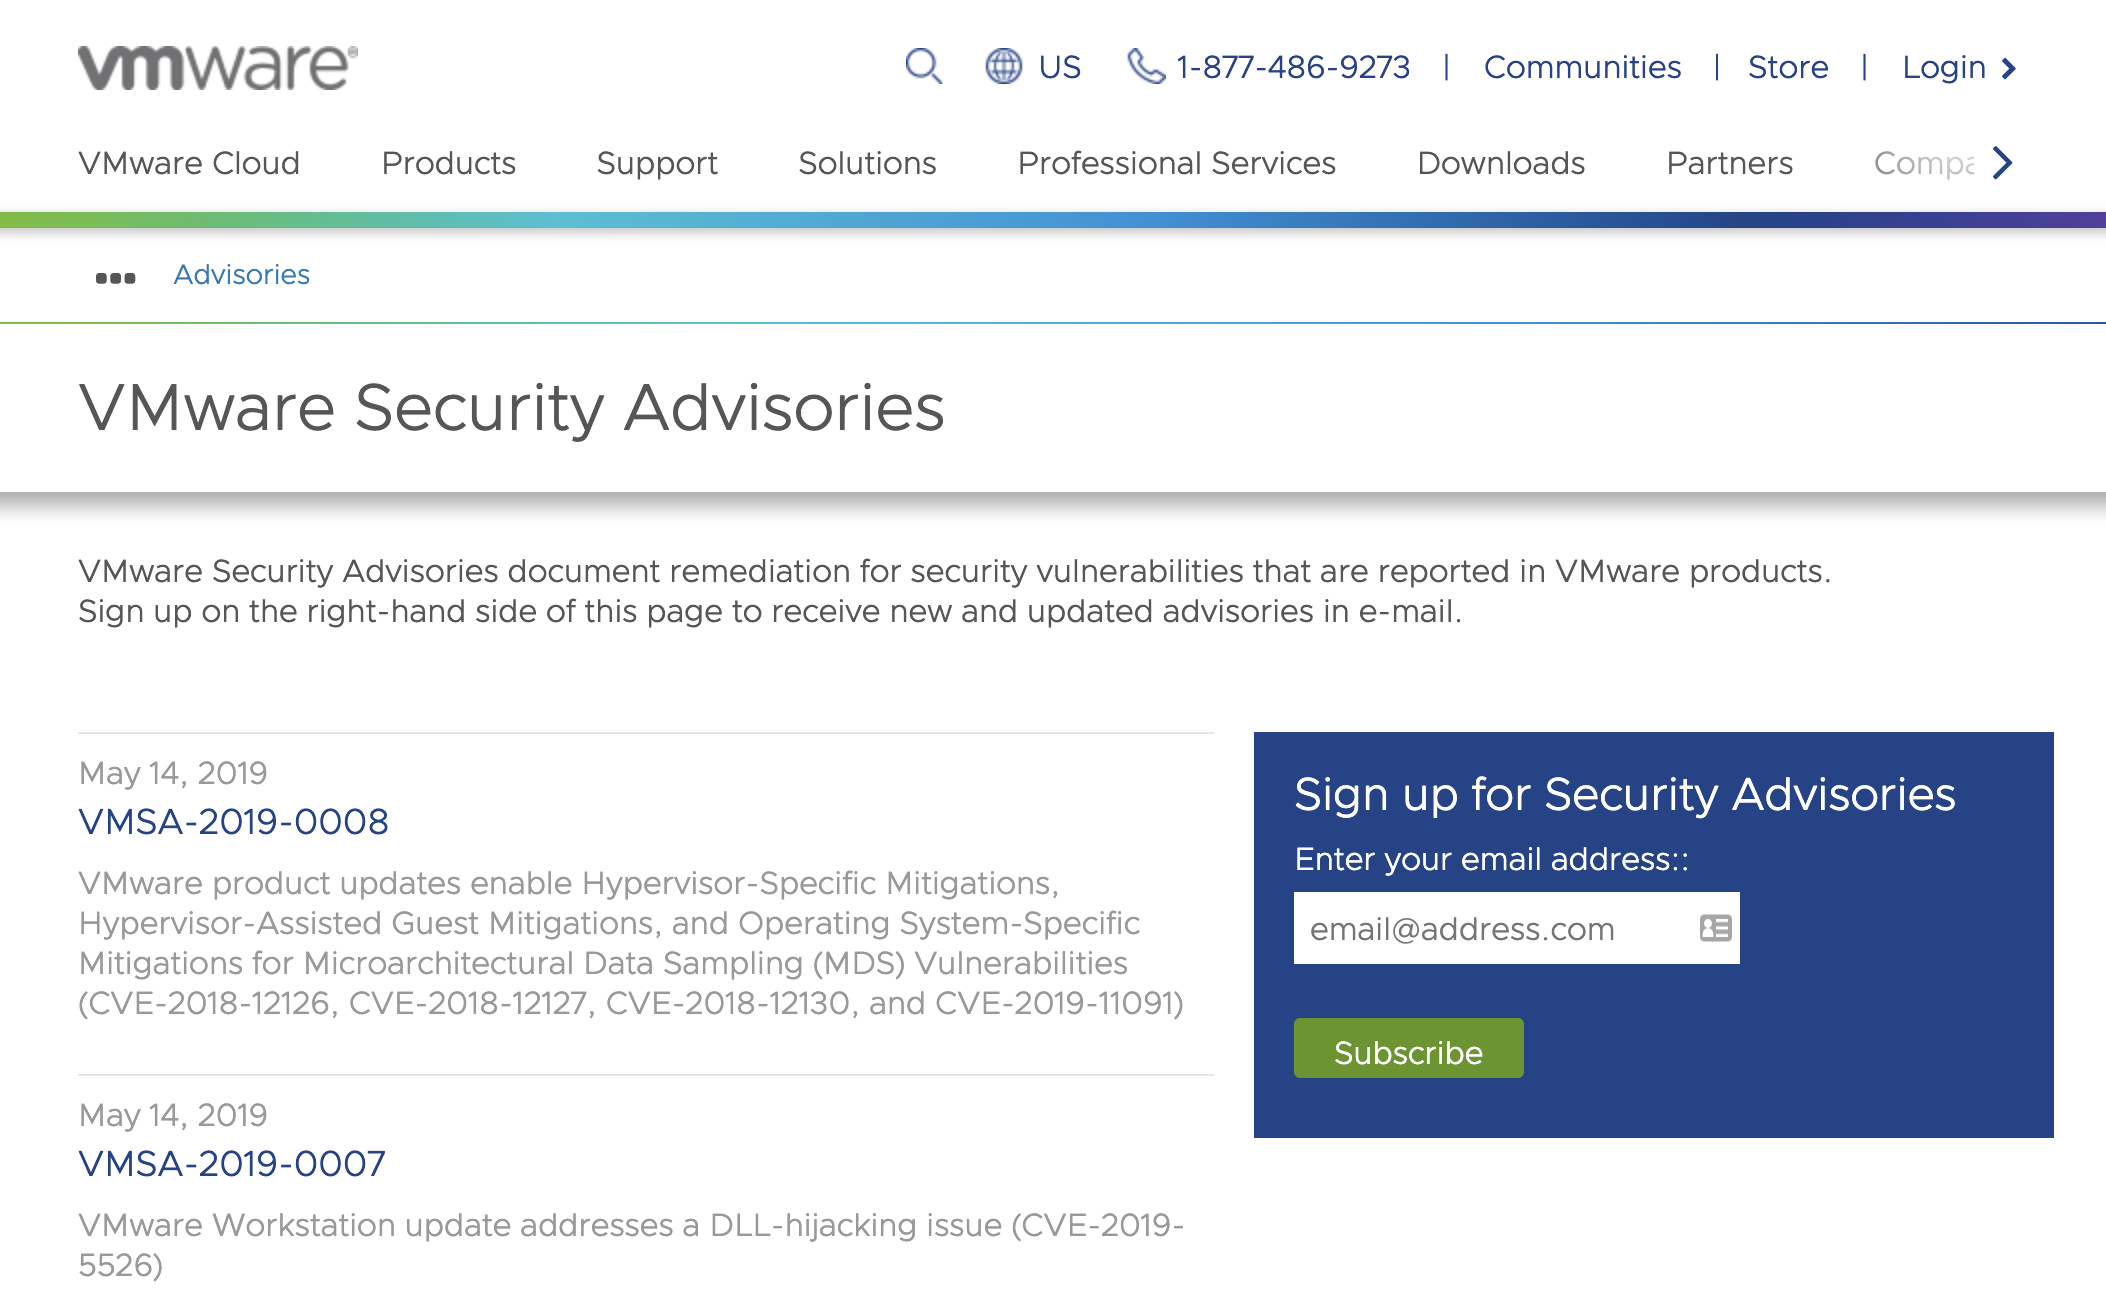 VMware Security Advisories website: https://www.vmware.com/security/advisories.html